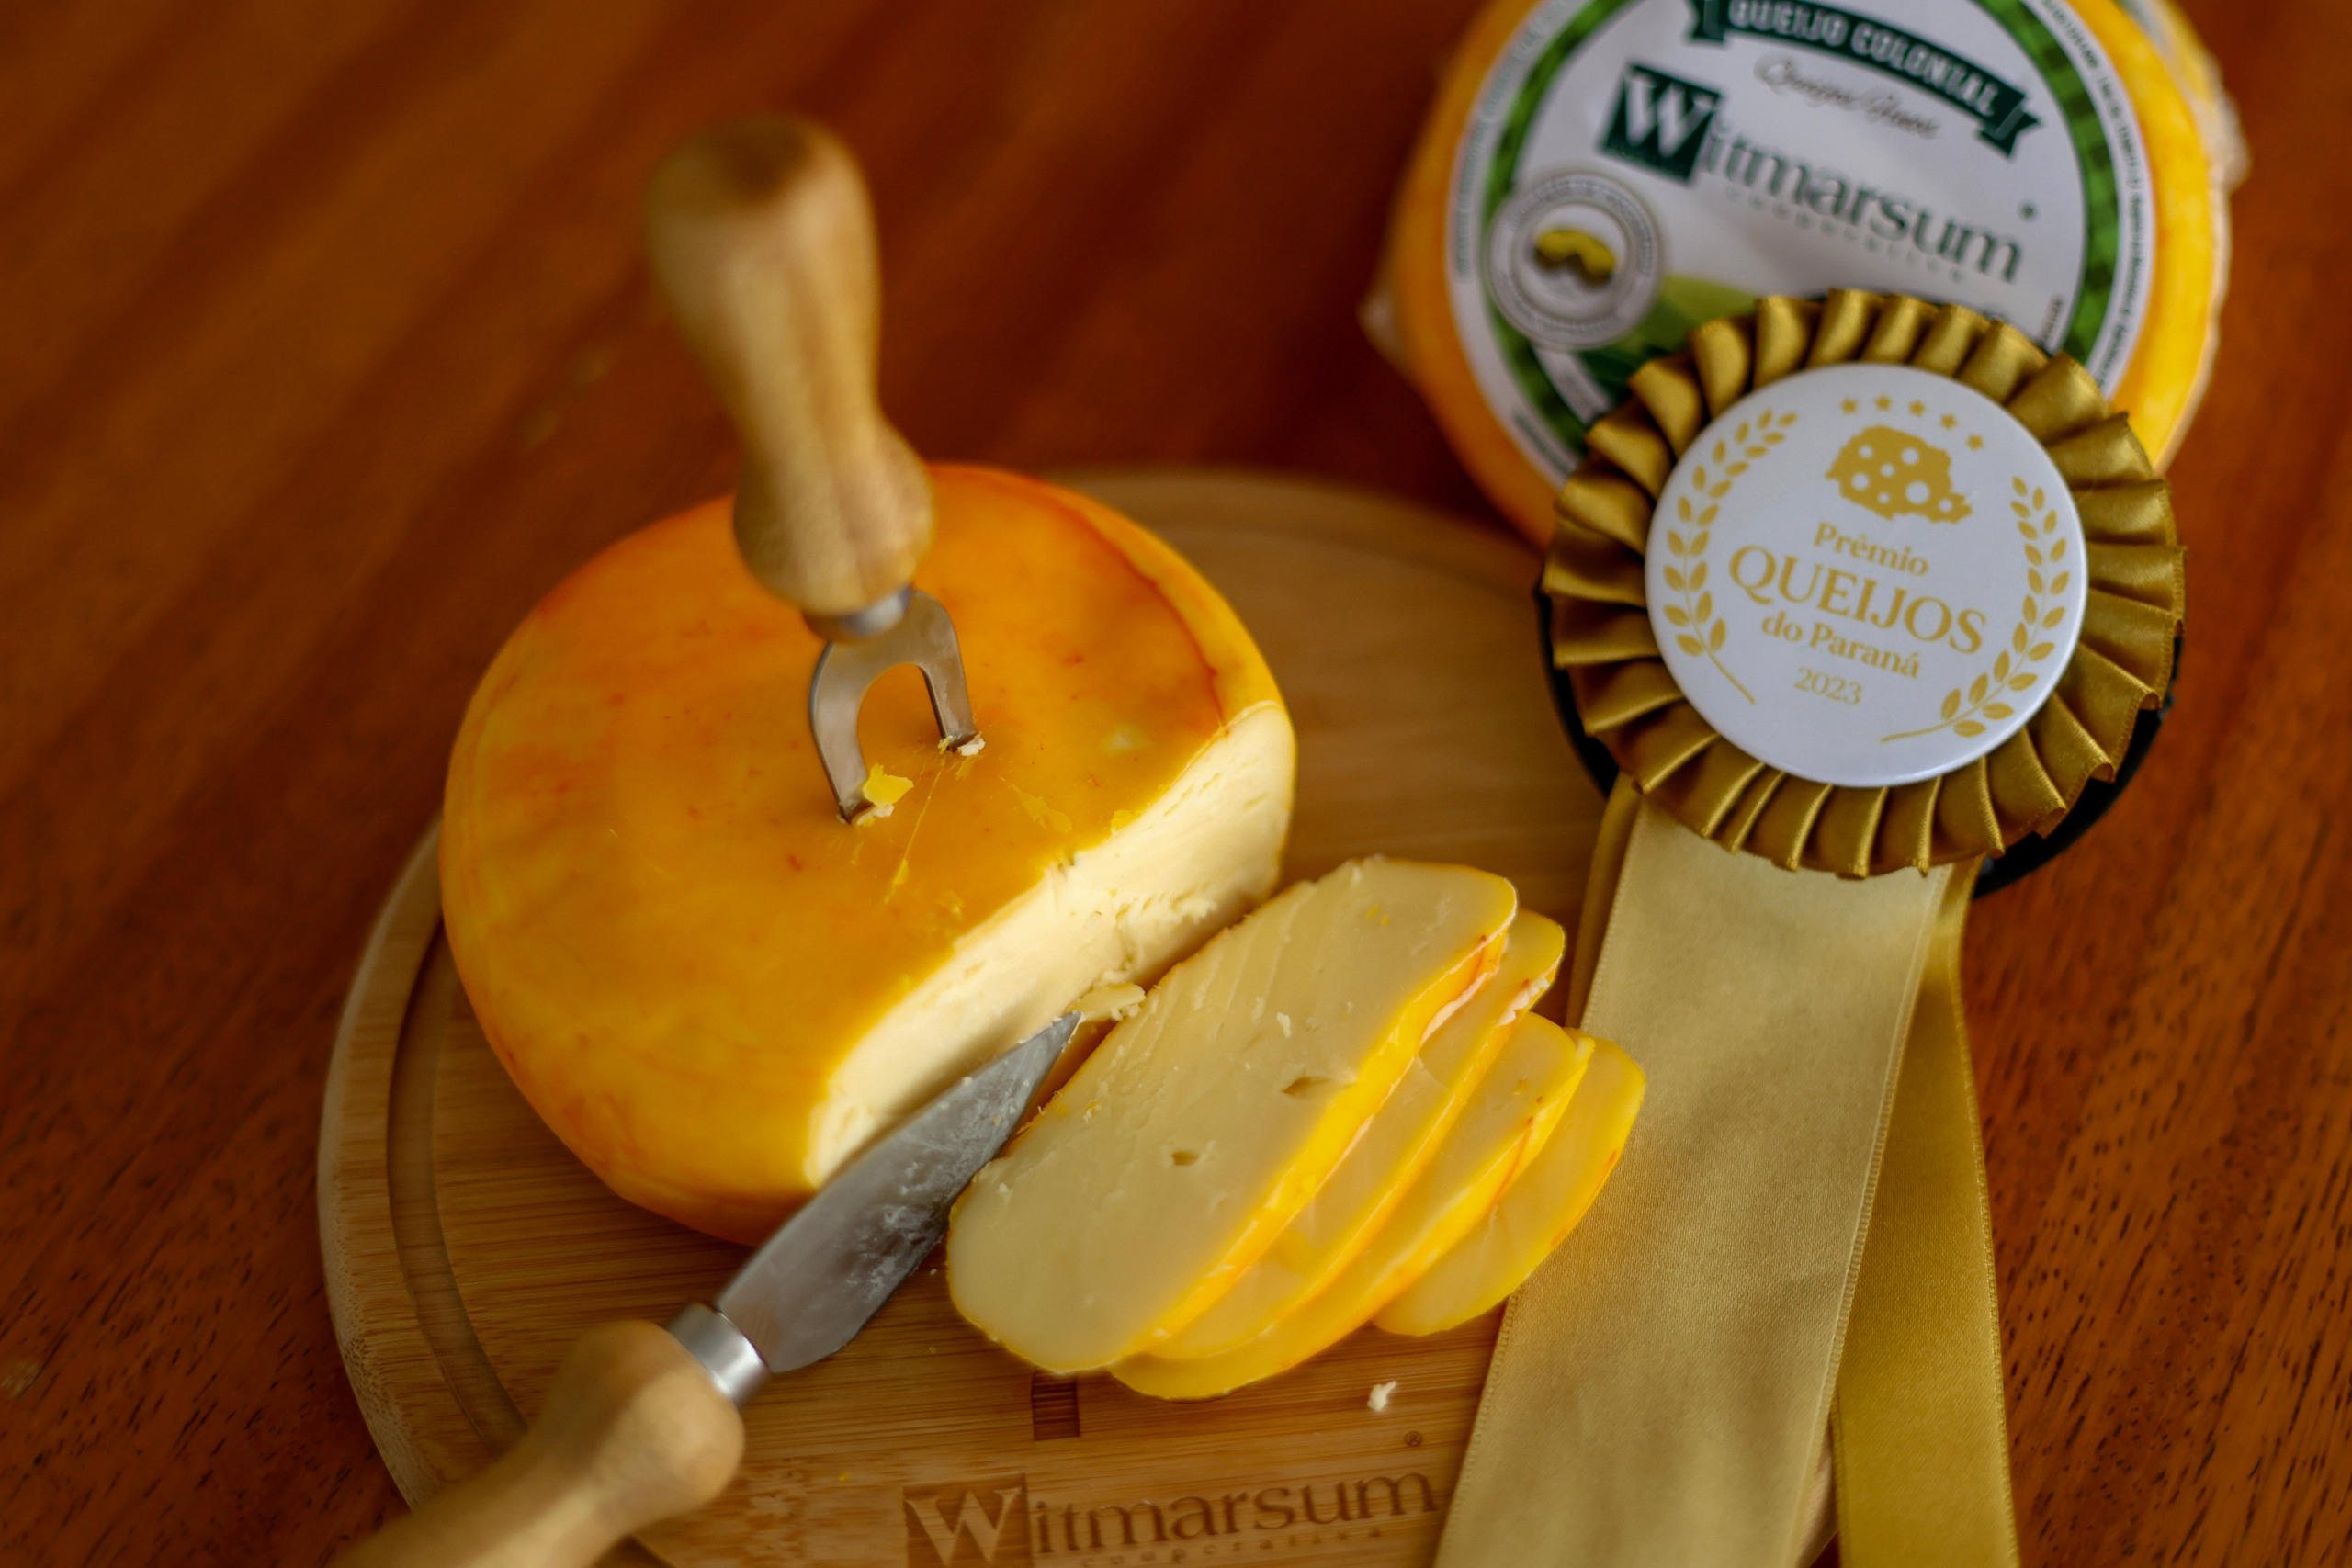 queijos, paraná, Witmarsum, Indicação Geográfica